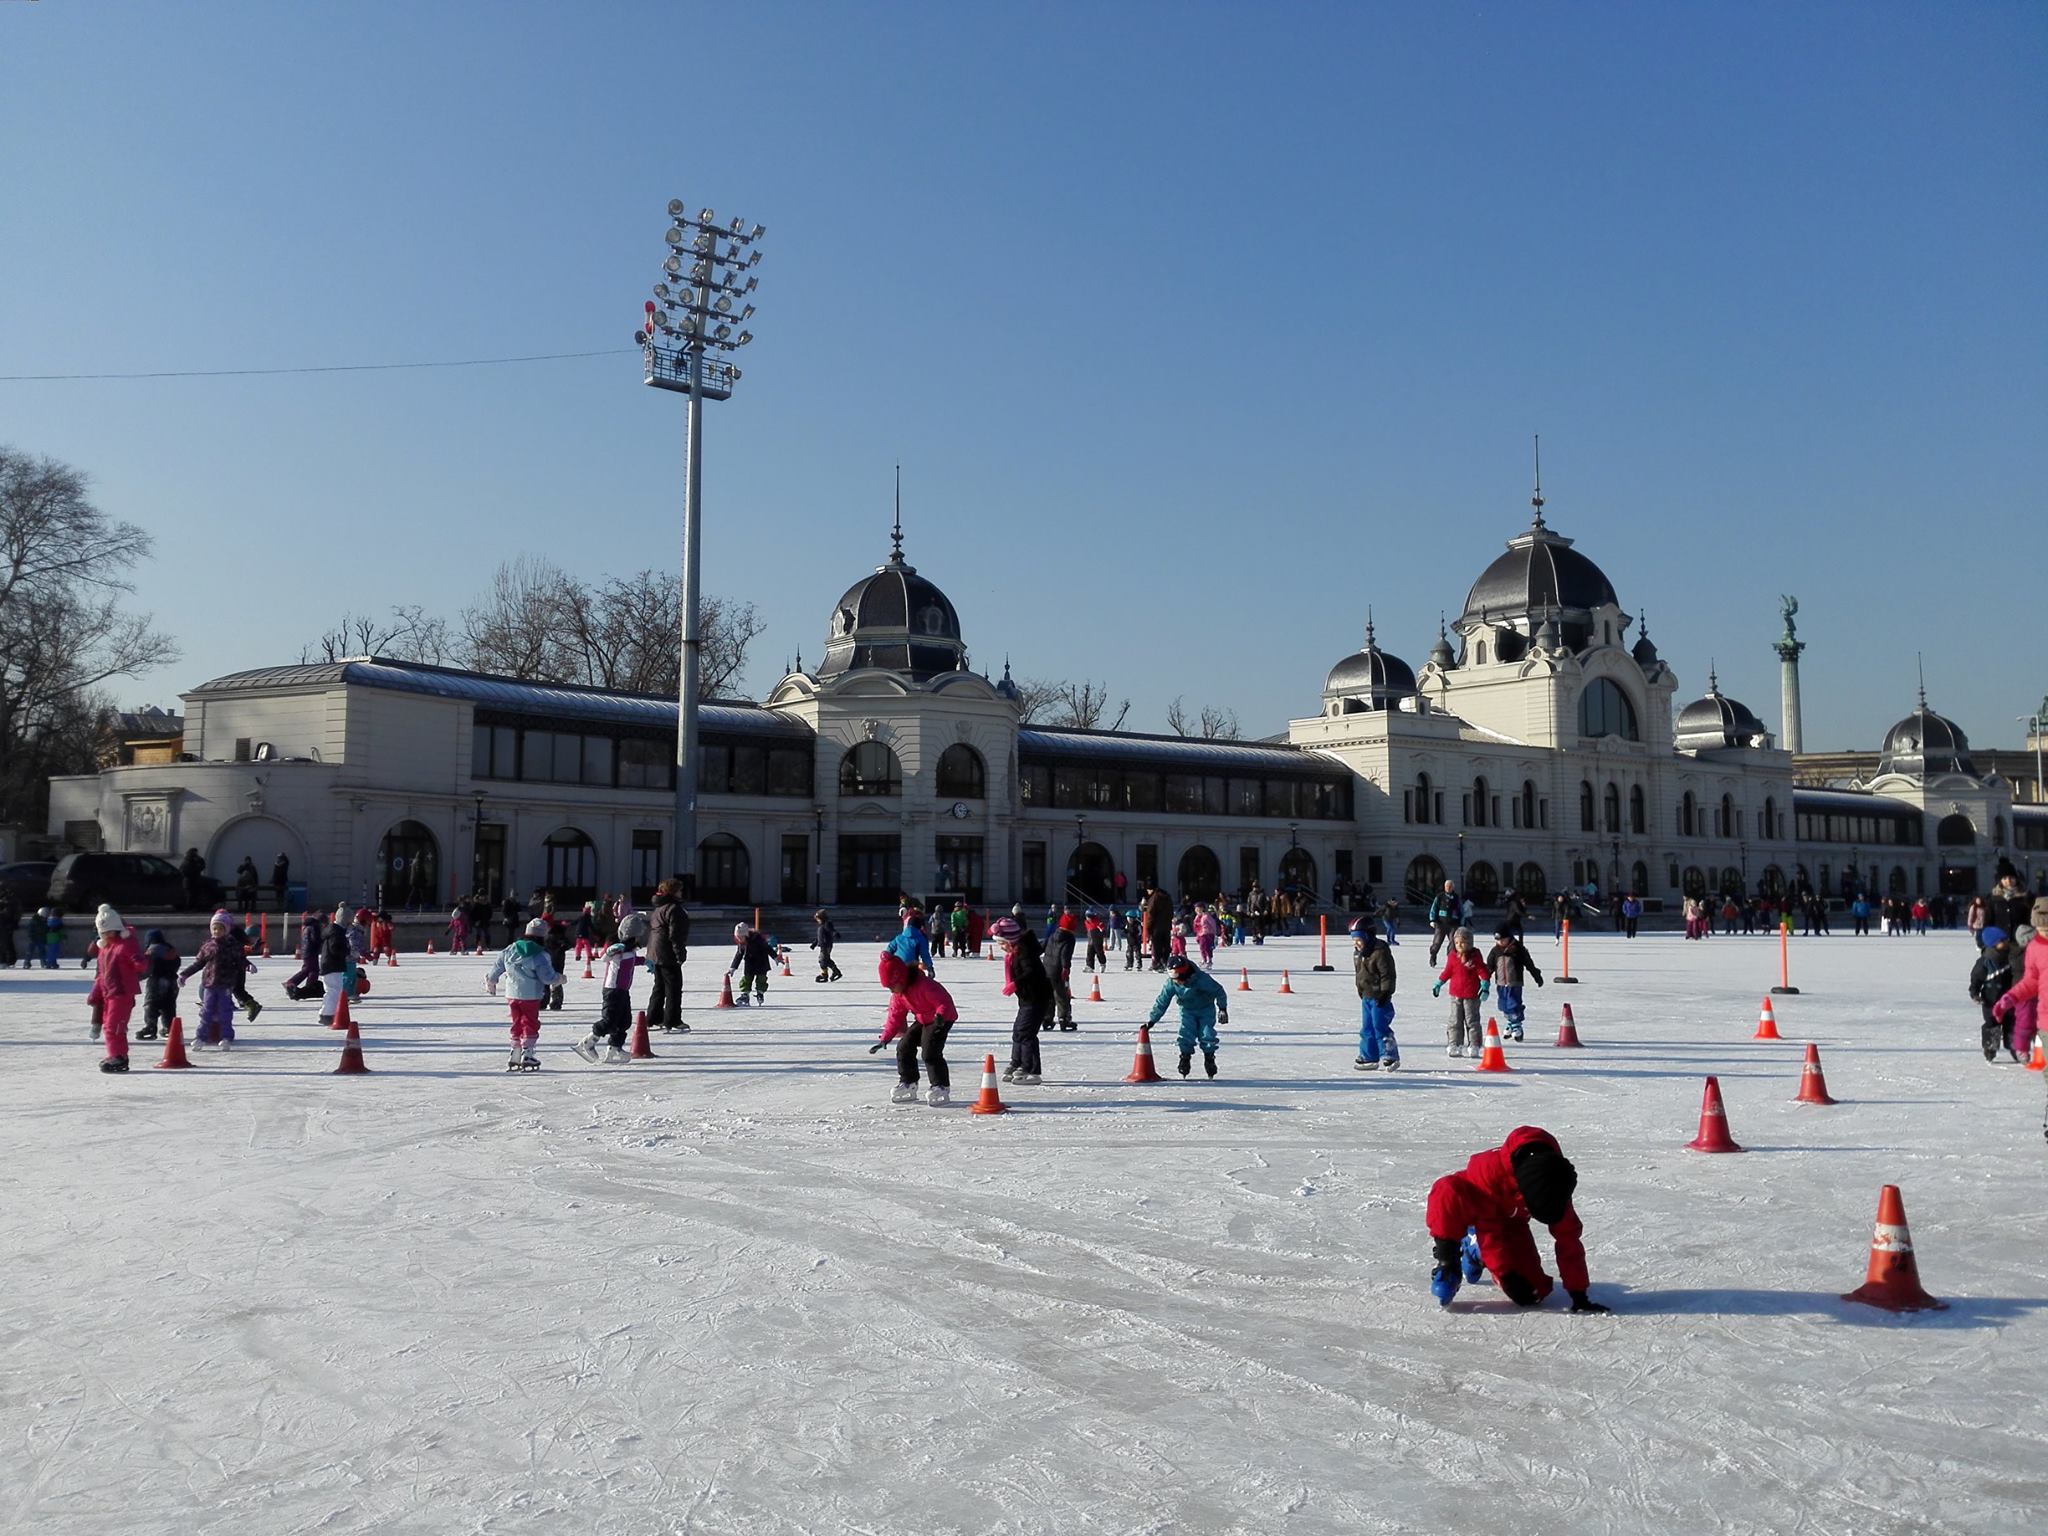 Ice skating at Városliget